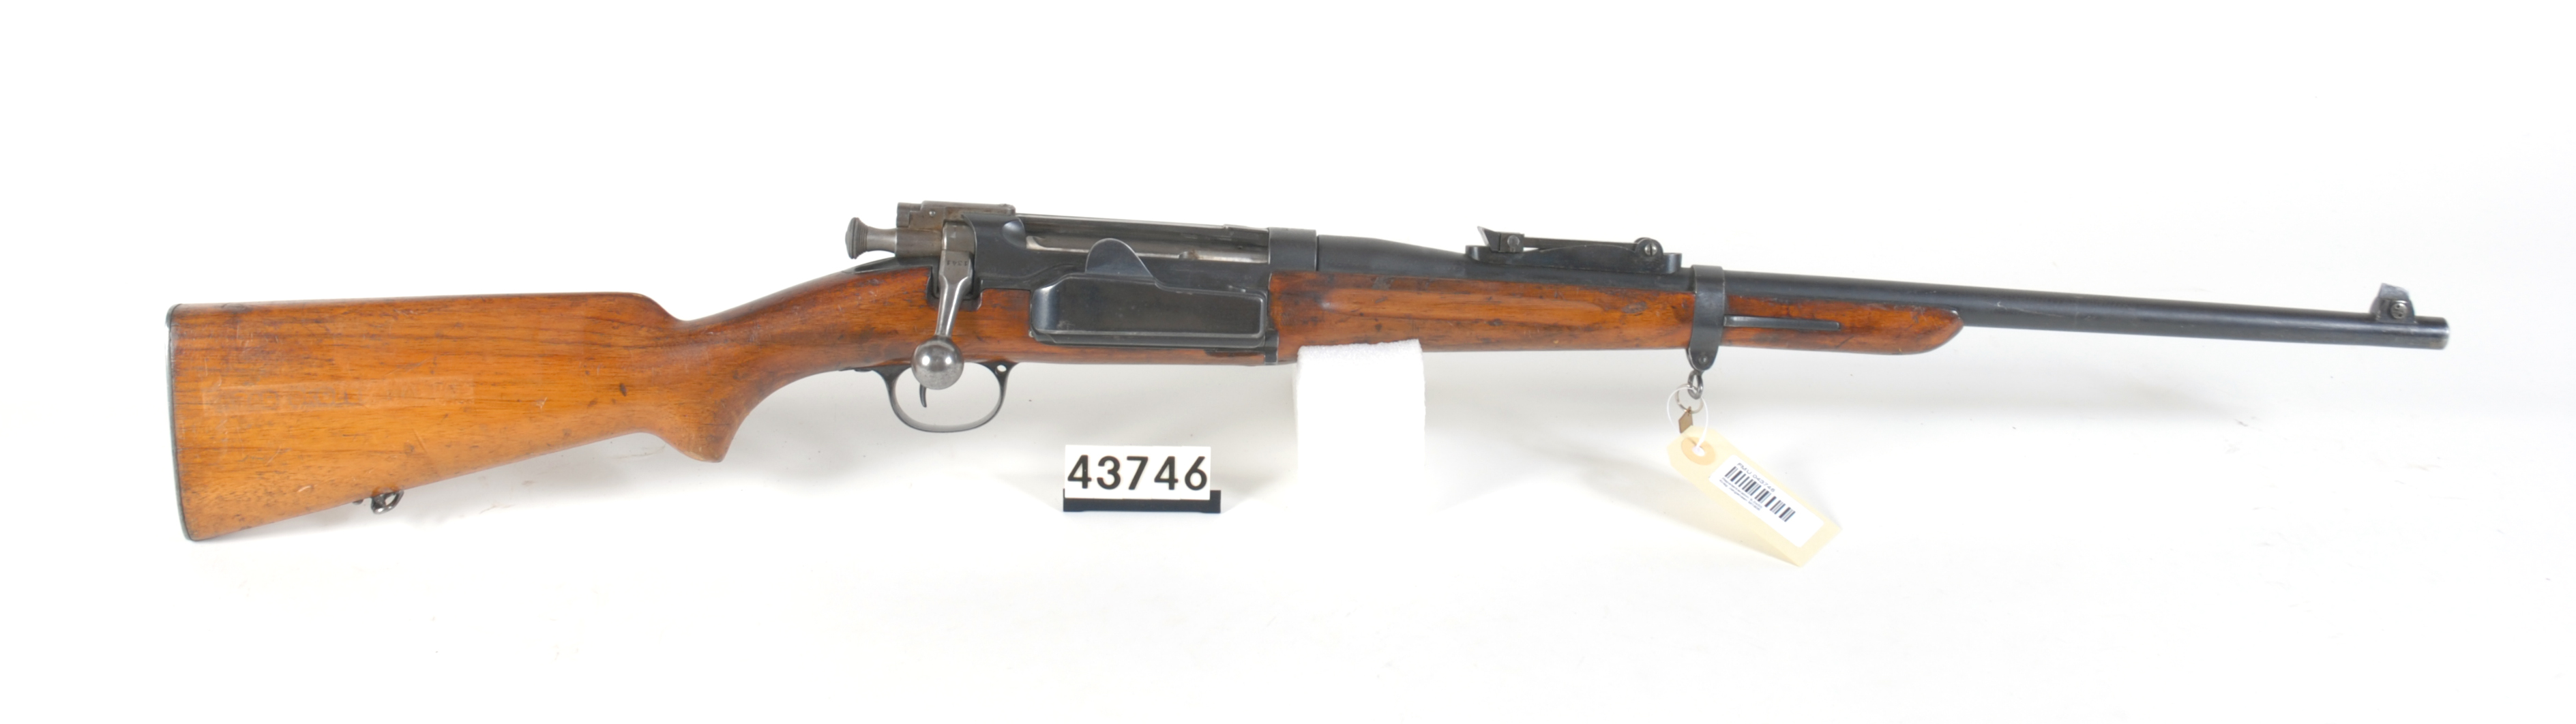 ./guns/rifle/bilder/Rifle-Kongsberg-Krag-M1906-FMU.043746.jpg